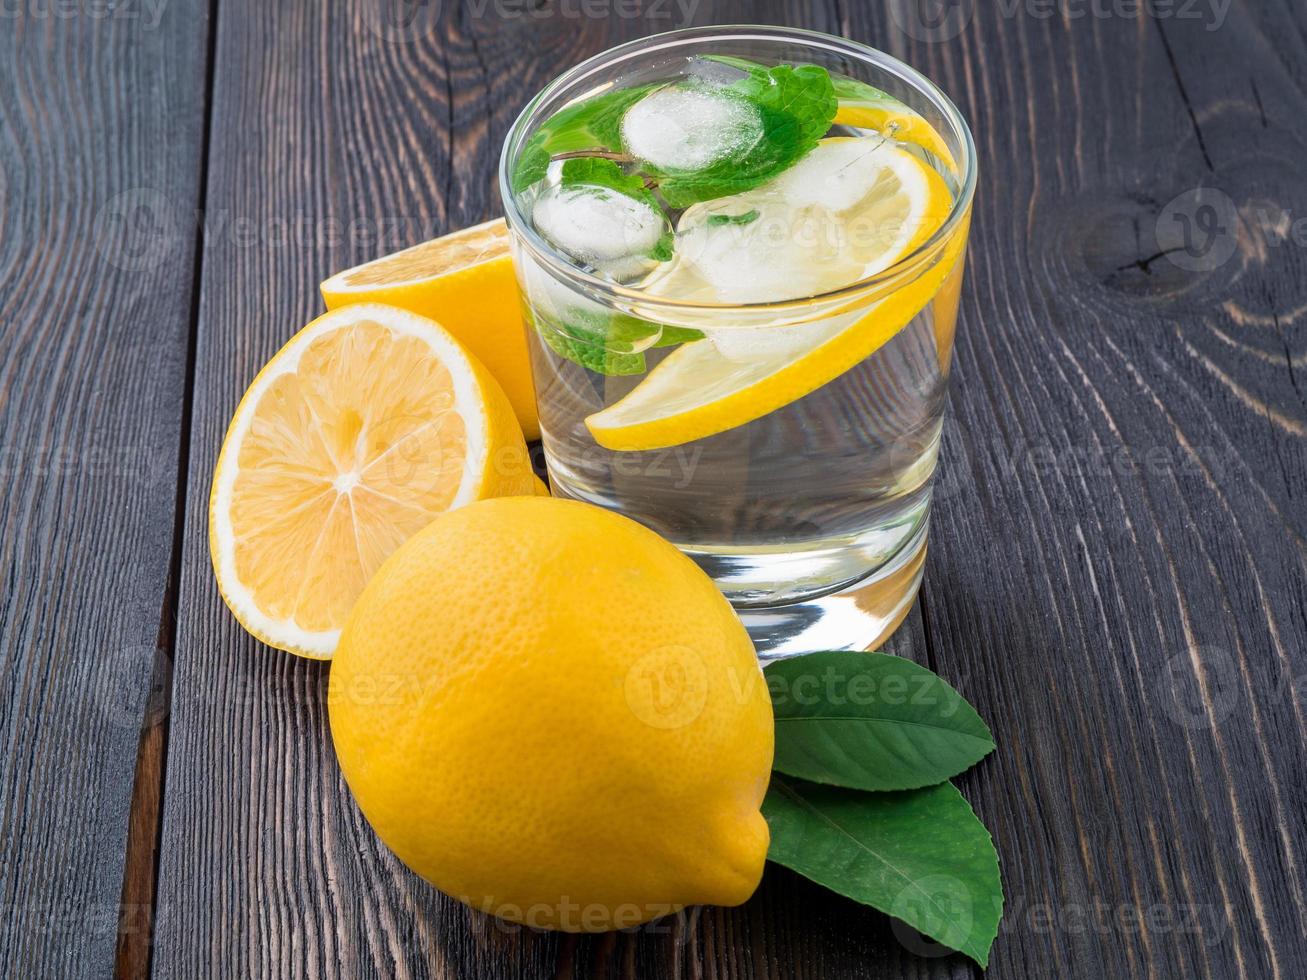 limonade in een glas, een halve citroen, verse bladeren op donkerbruine houten tafel. een verfrissend koud drankje van water met ijs, munt en schijfjes citroen, zijaanzicht foto